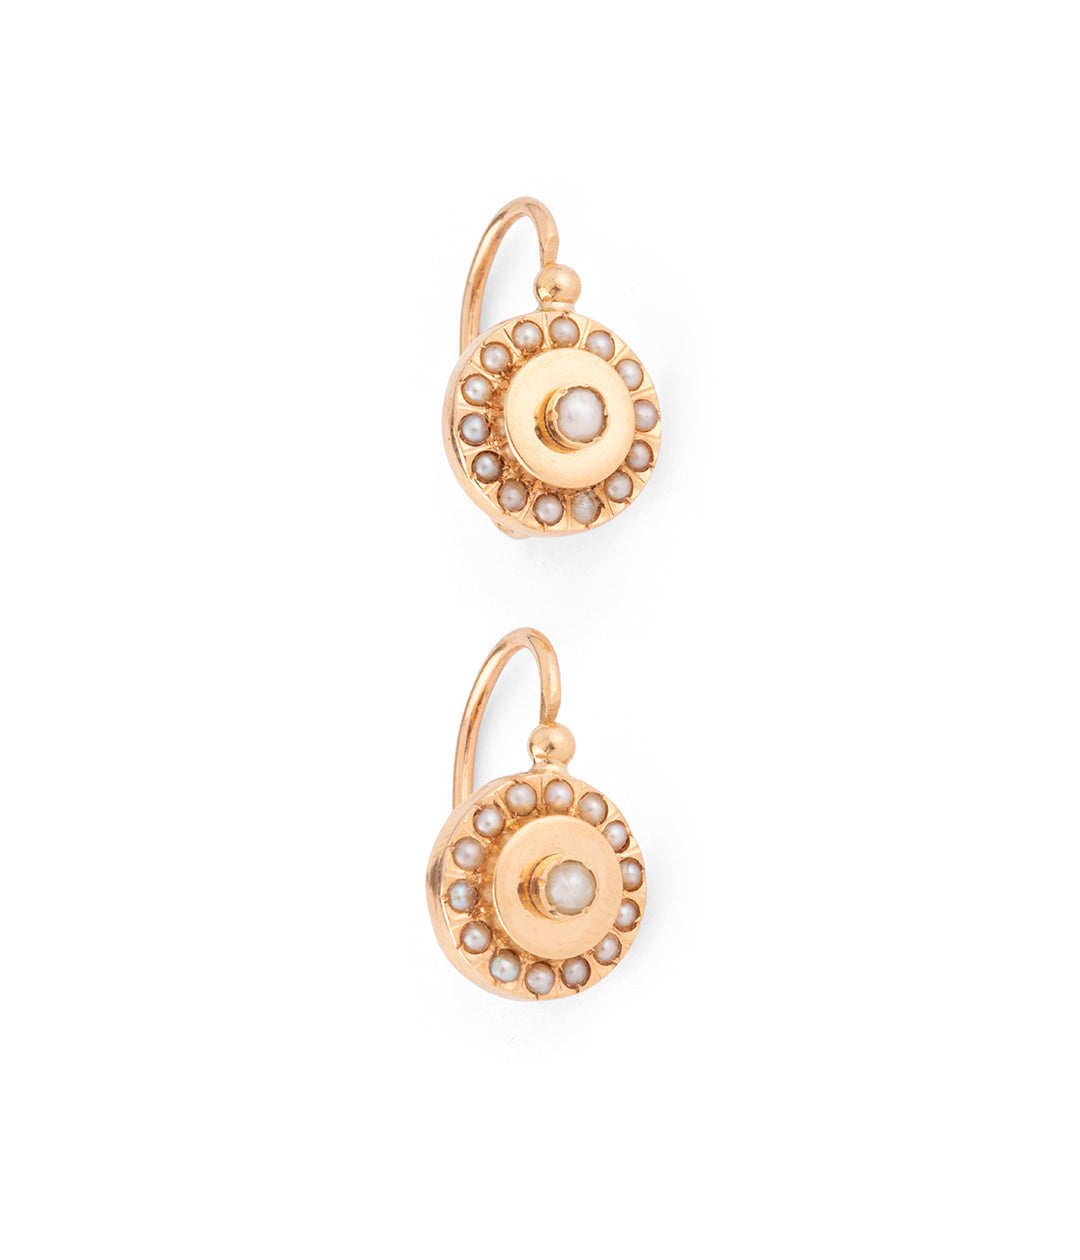 Antique pearls earrings "Lamri" - Caillou Paris